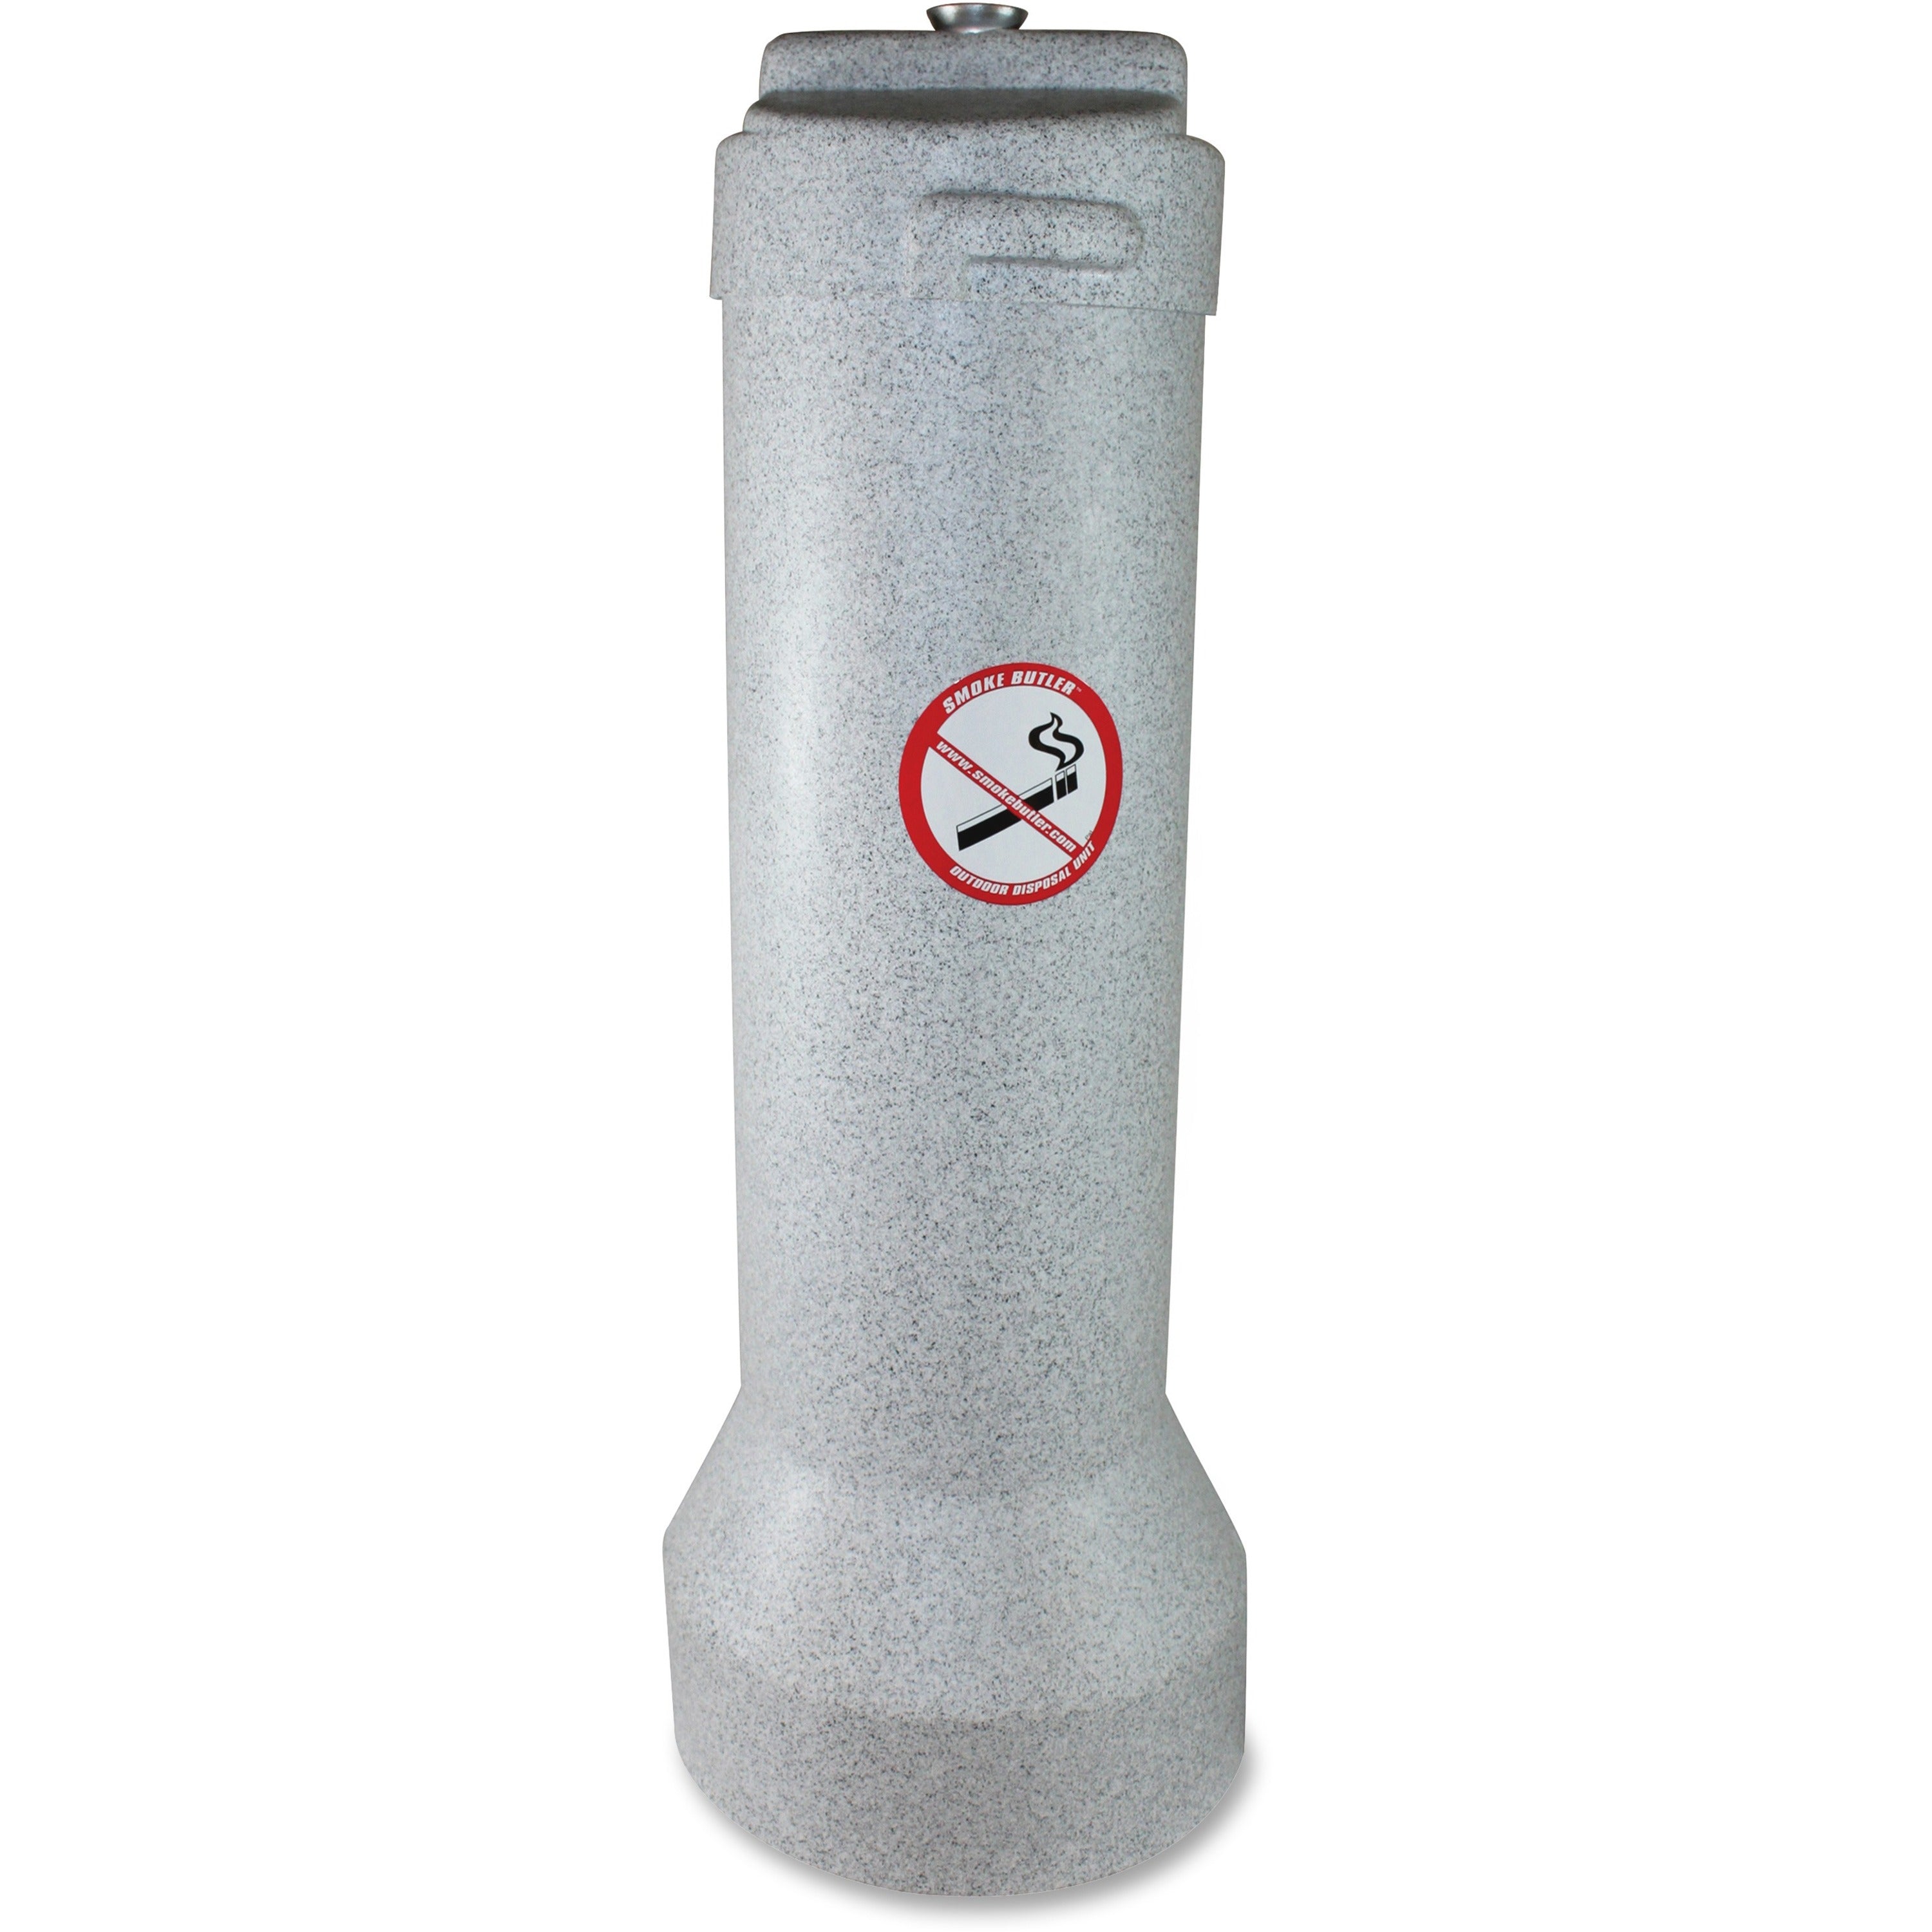 Butler Outdoor Smoker's Receptacle - 25" Height x 9" Width - Aluminum, Steel - Gray Granite - 1 Each - 